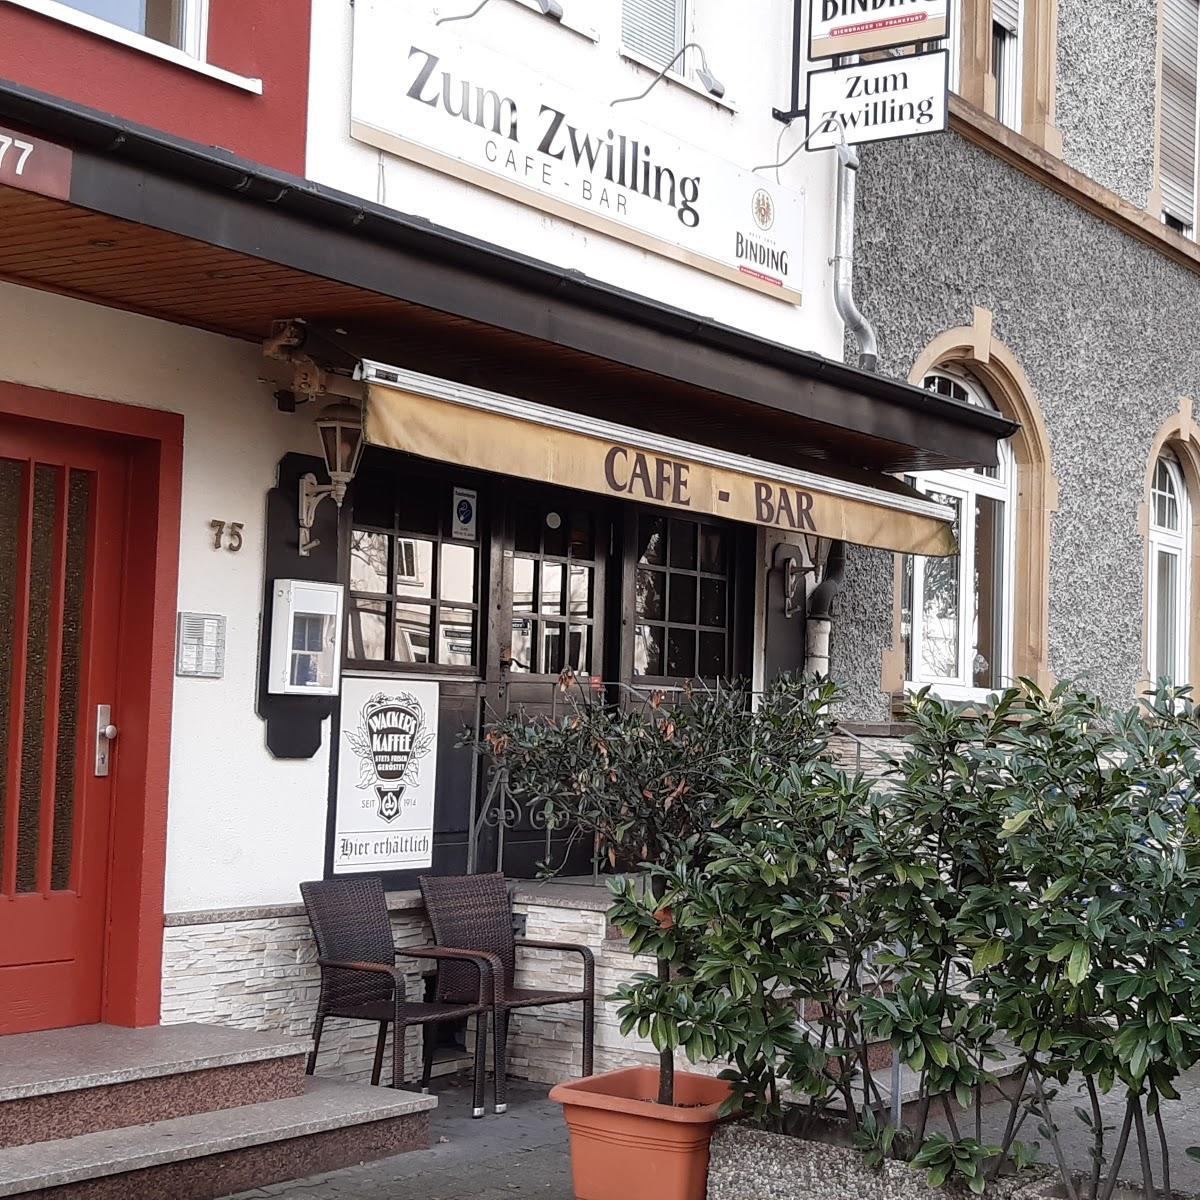 Restaurant "Zum Zwilling" in Frankfurt am Main